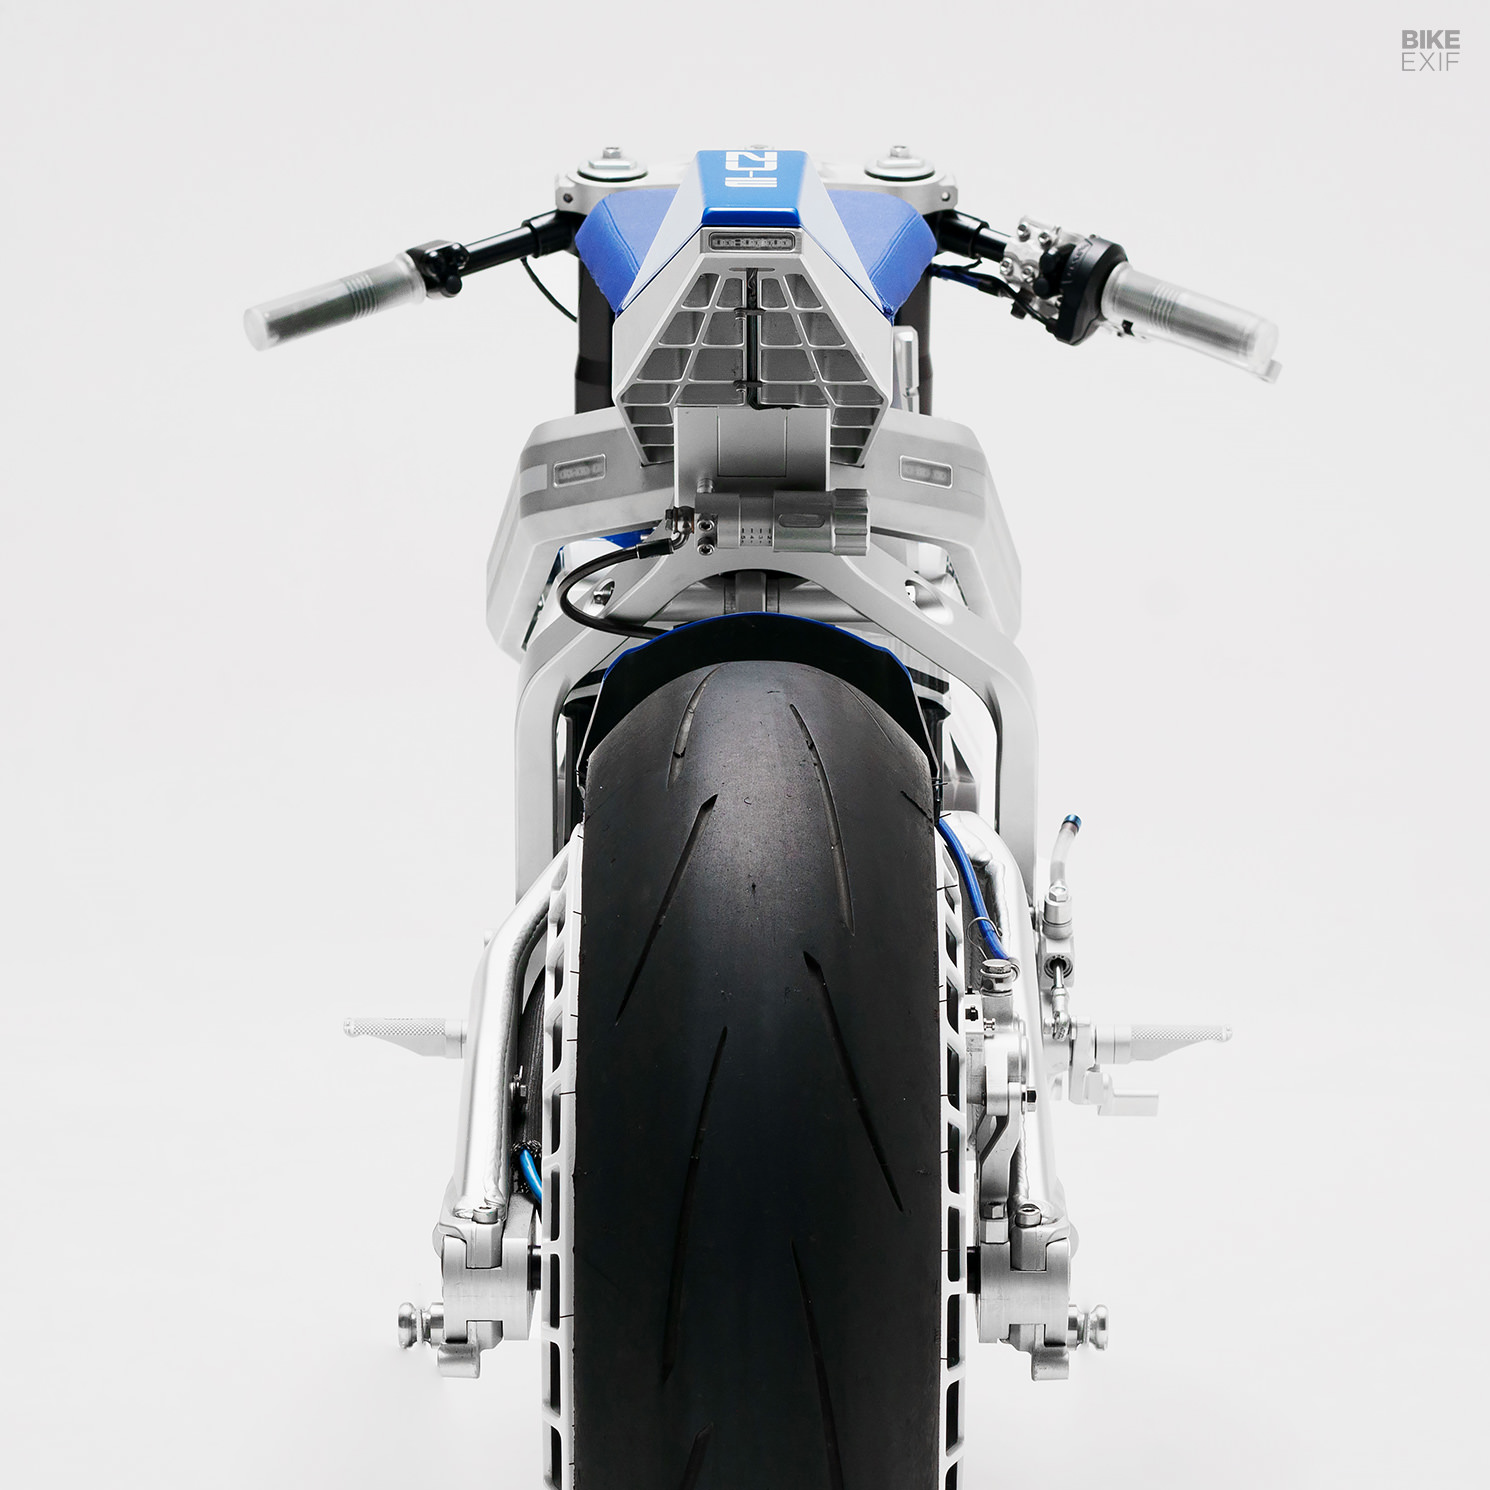 NUEN MOTO's electric motorcycle concept